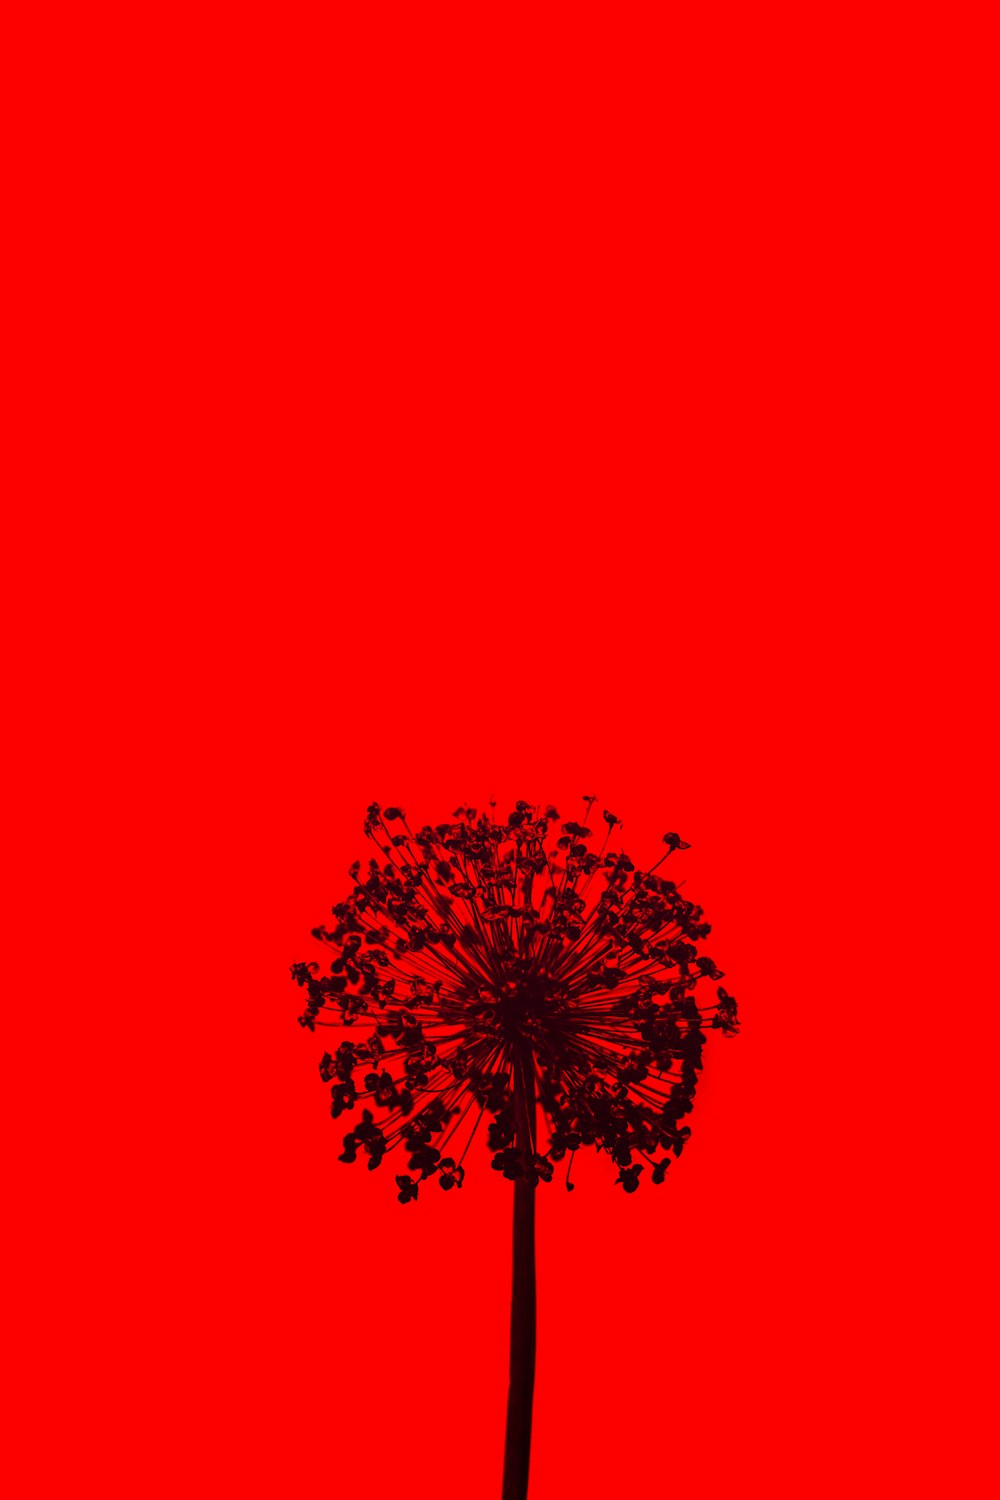 ilustração da árvore vermelha e preta